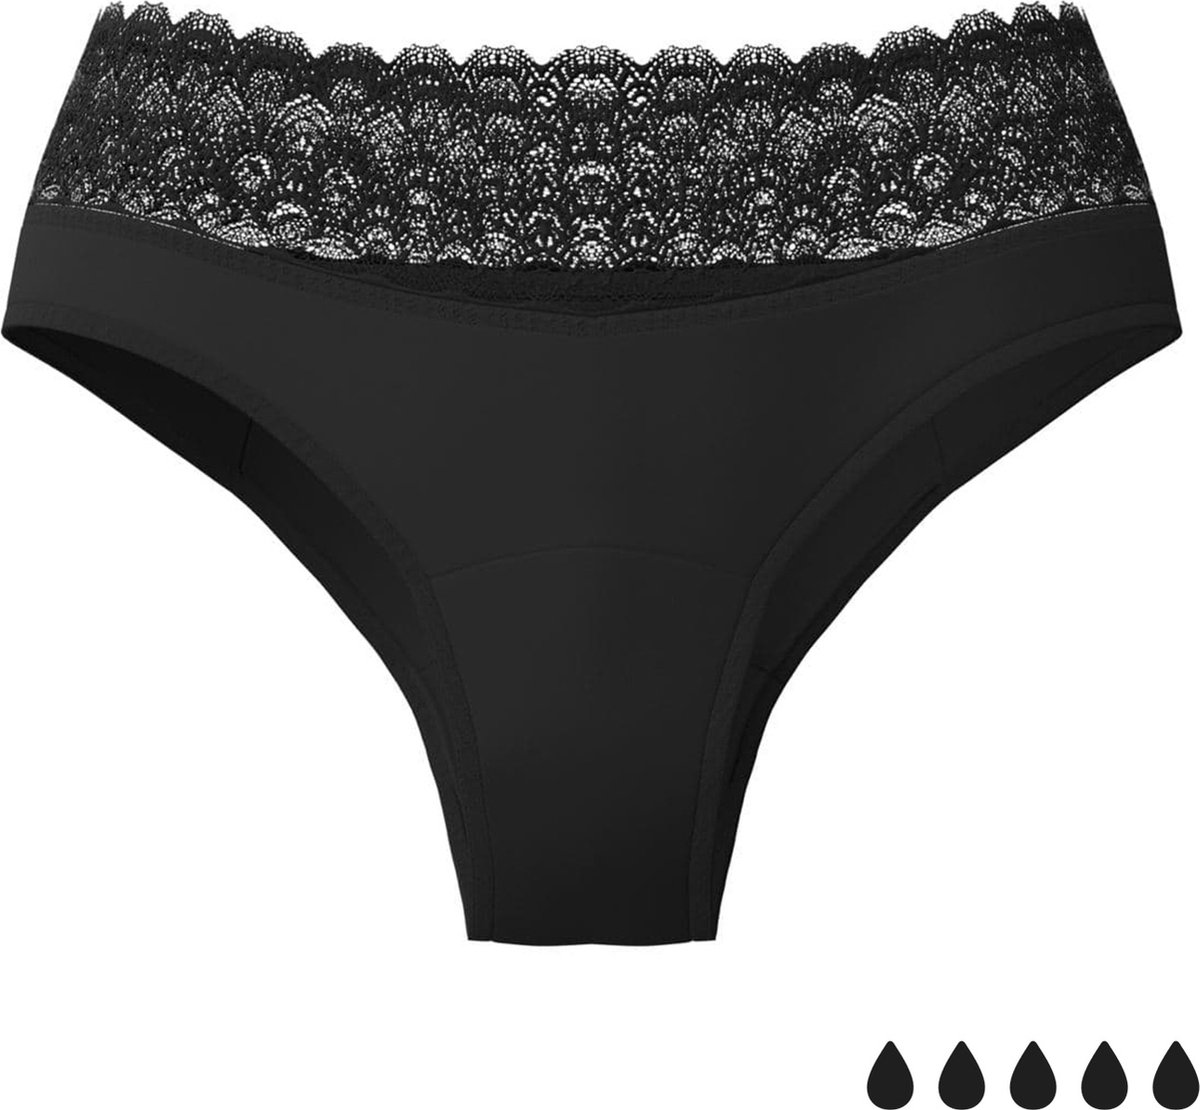 Weekiss Menstruatie Klassiek - Menstruatie Ondergoed, period underwear, period panties, XL (42), Zwart